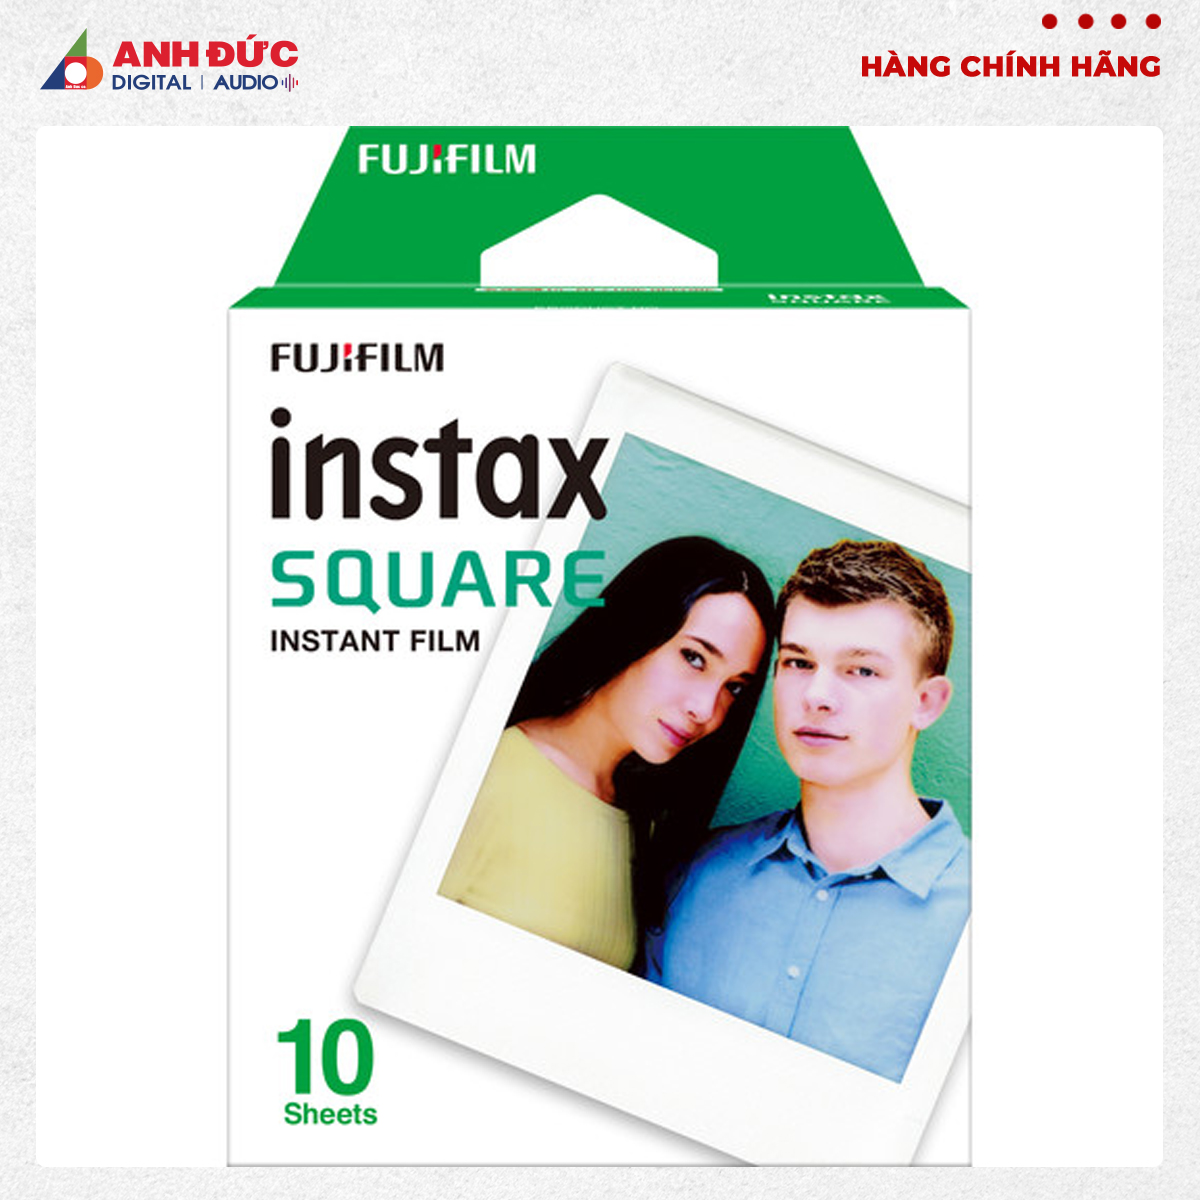 Phim Fujifilm instax Square Instant Film 10 tấm